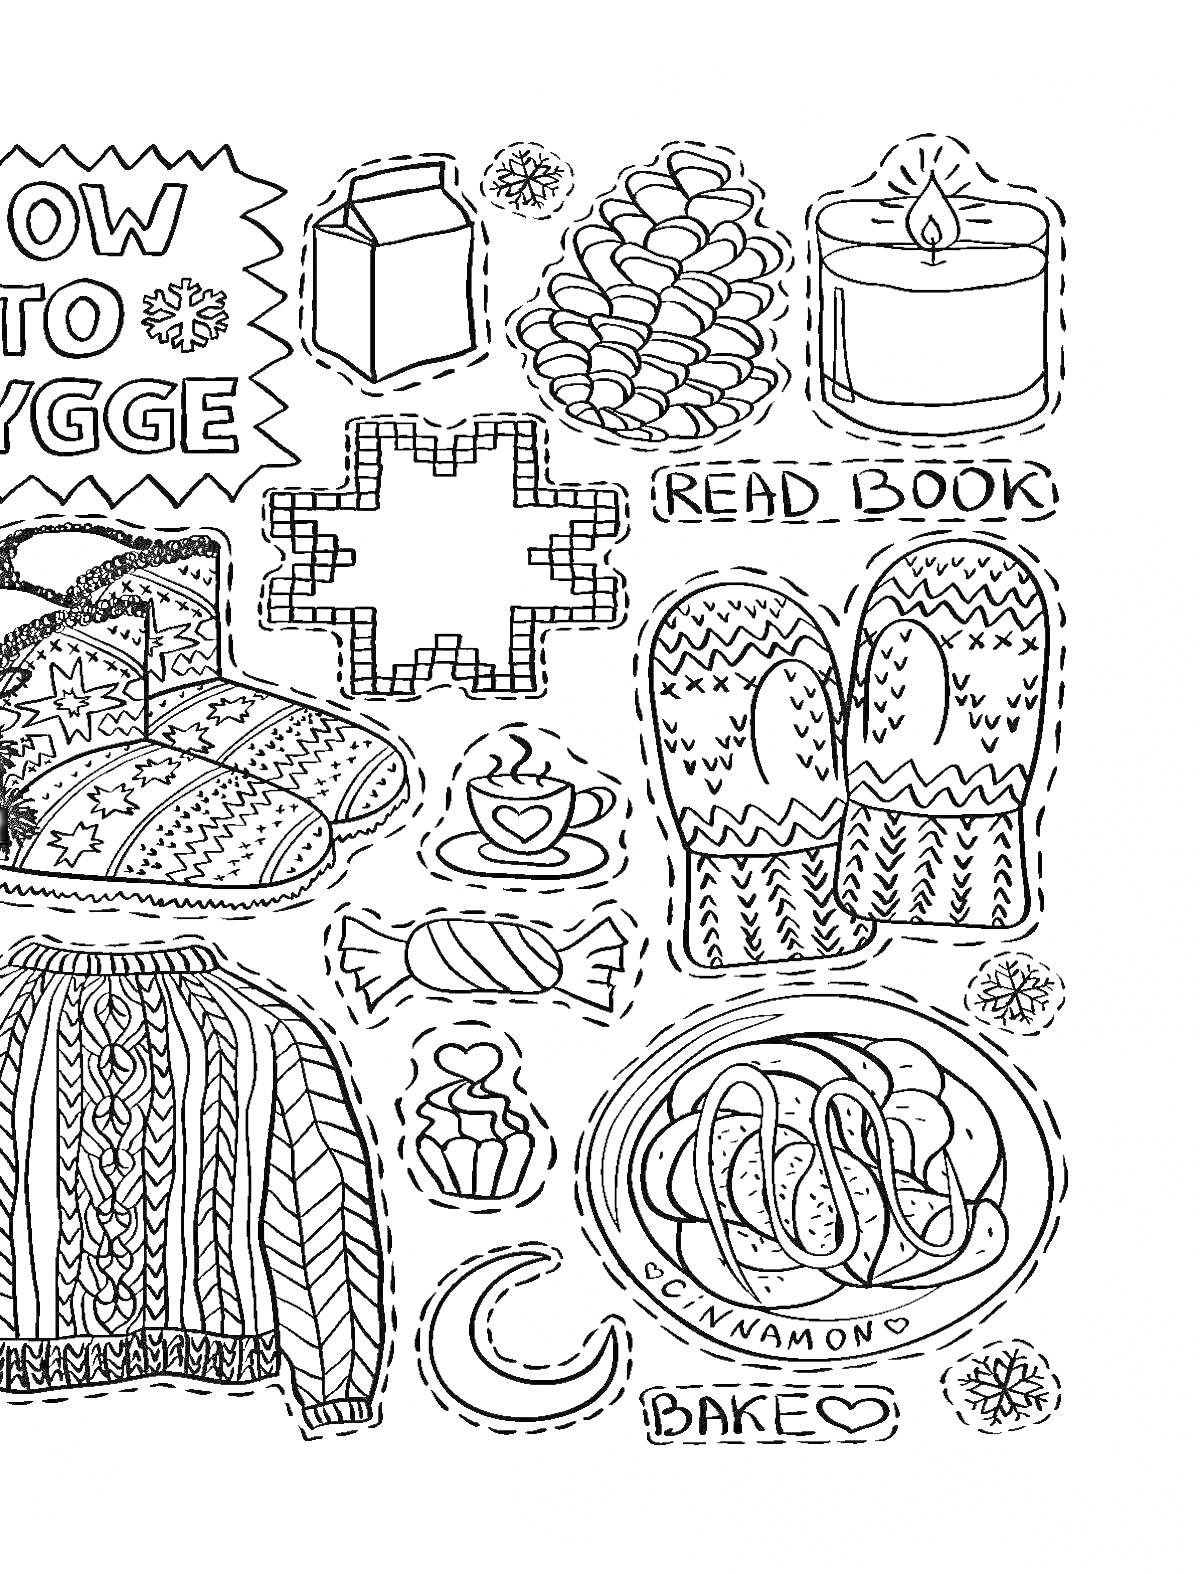 Раскраска Как создать хюгге: свитер, варежки, тапочки, кружка с напитком, плюшки, свеча, книга, молоко, конфета, крест-накрест декор, сладкий пирог с надписью 